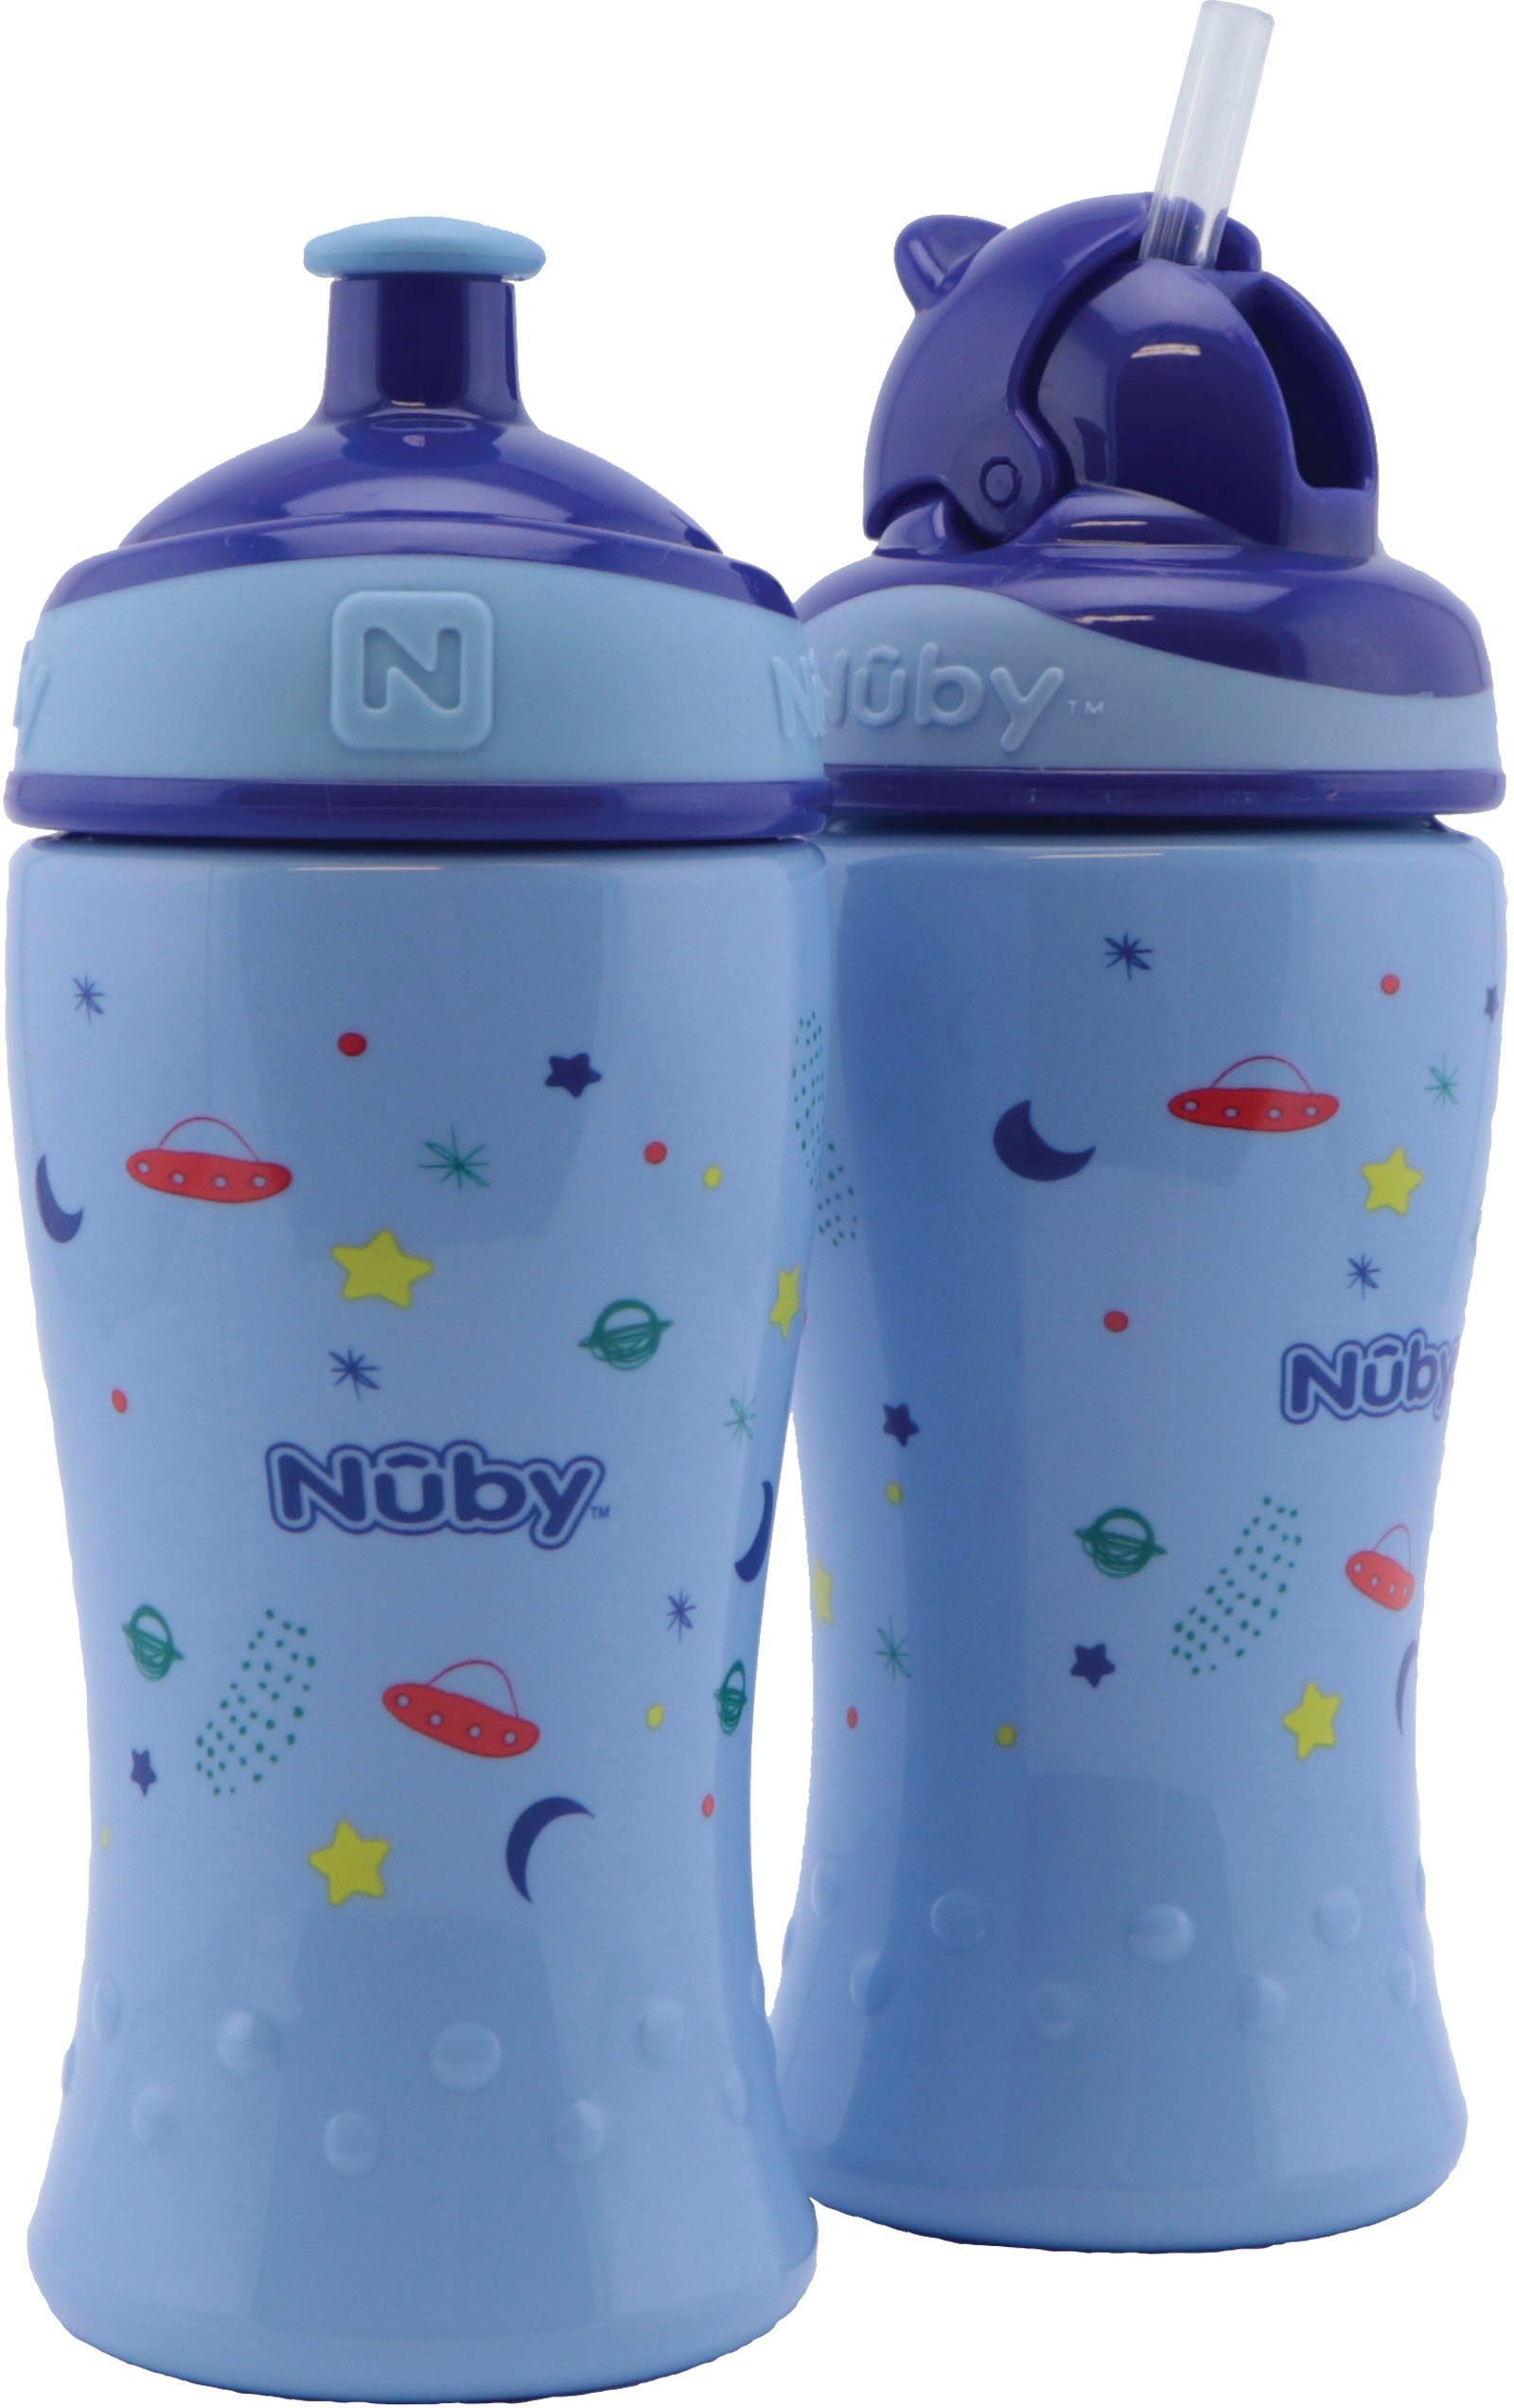 Nuby Trinkflaschen online kaufen OTTO 